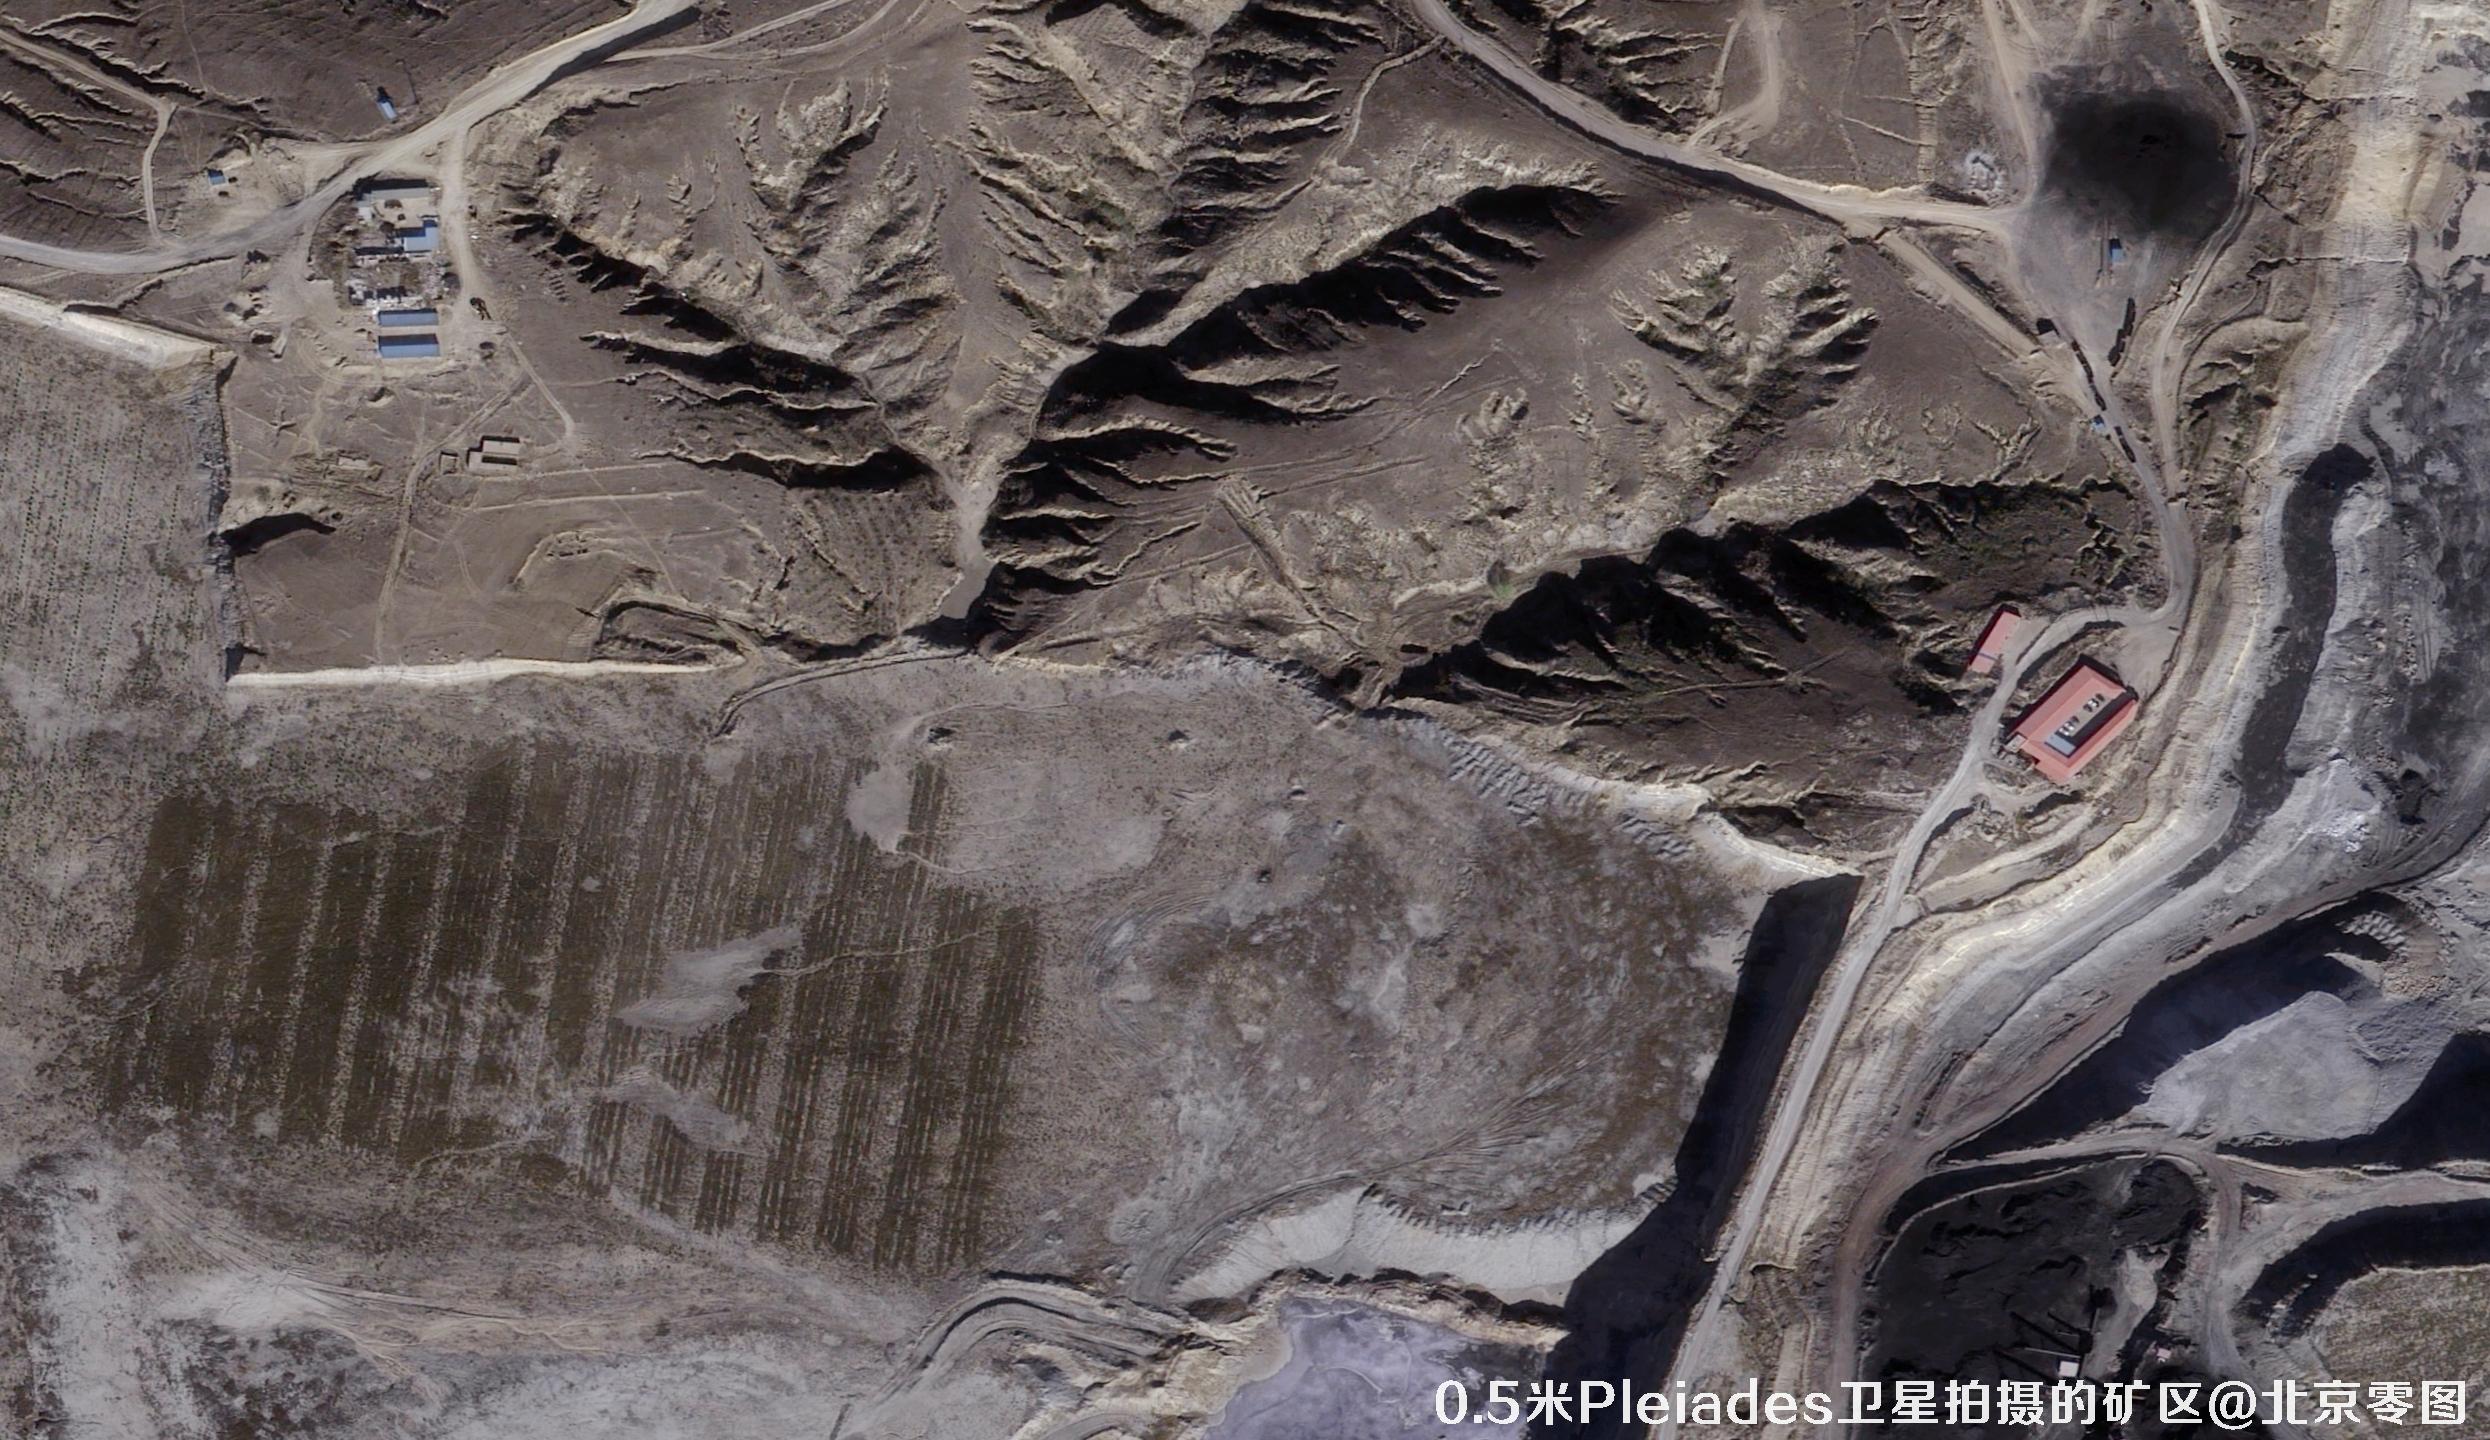 0.5米Pleiades卫星拍摄的内蒙古矿区卫星图